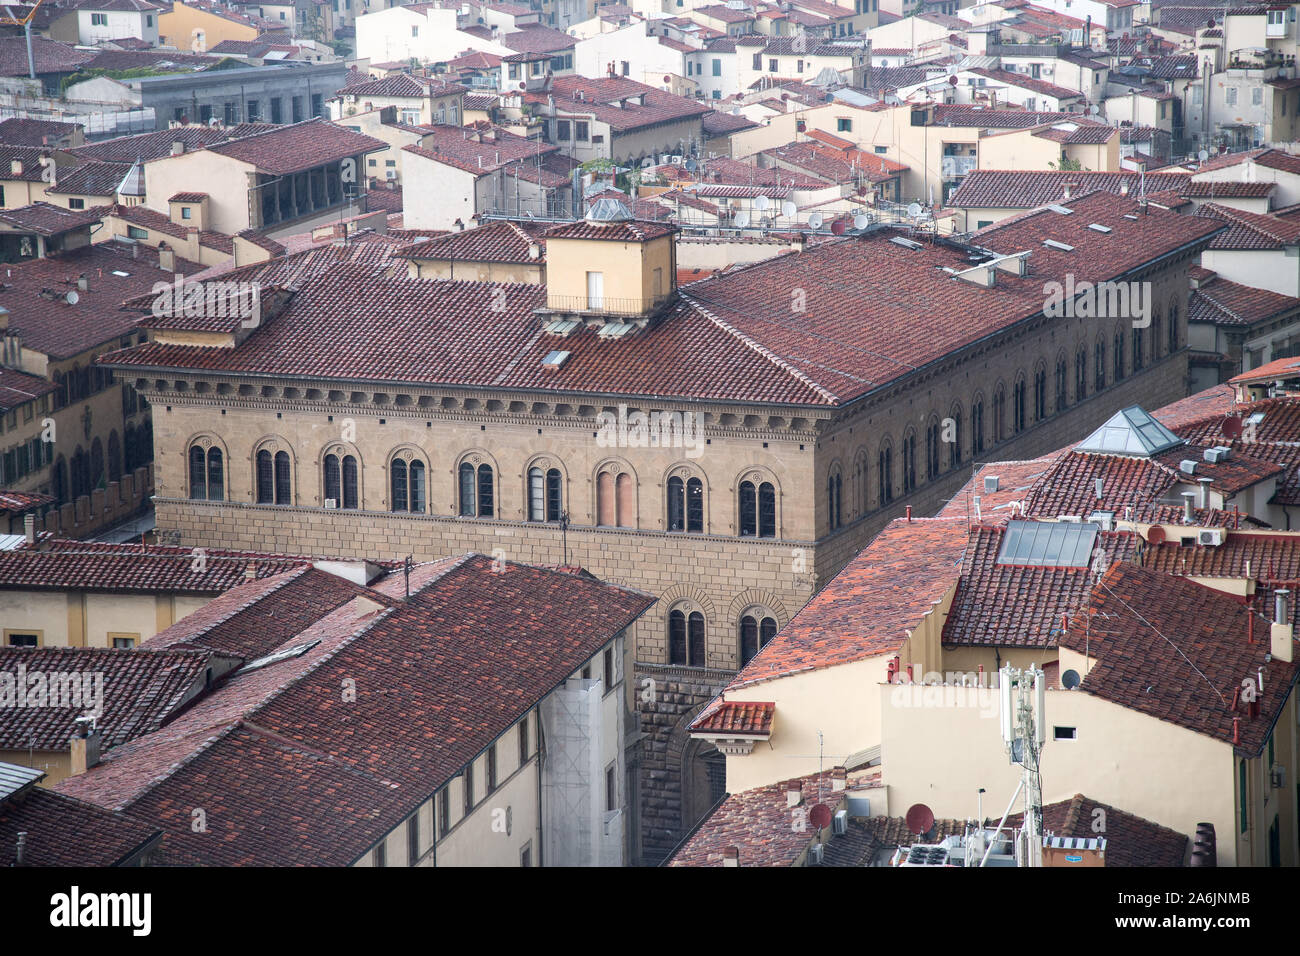 Der Renaissance Palazzo Medici Riccardi (Medici Riccardi Palace) für die Familie Medici im historischen Zentrum von Firenze aufgeführt sind Weltkulturerbe der UNESCO. Firenze, Stockfoto